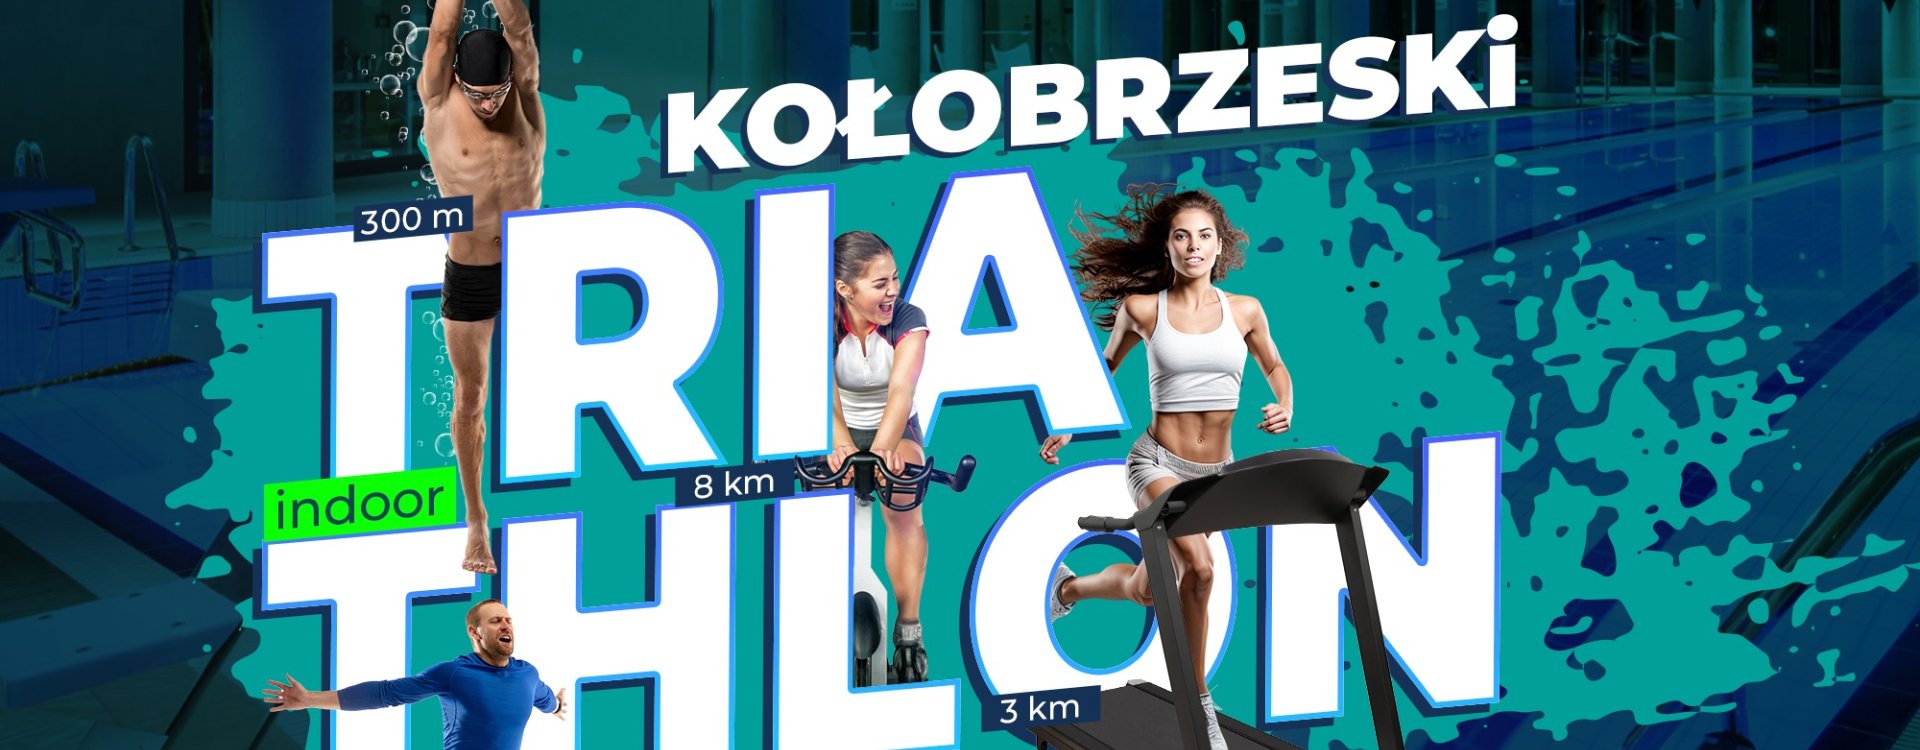 Zusammenfassung des Kołobrzeg Indoor Triathlon